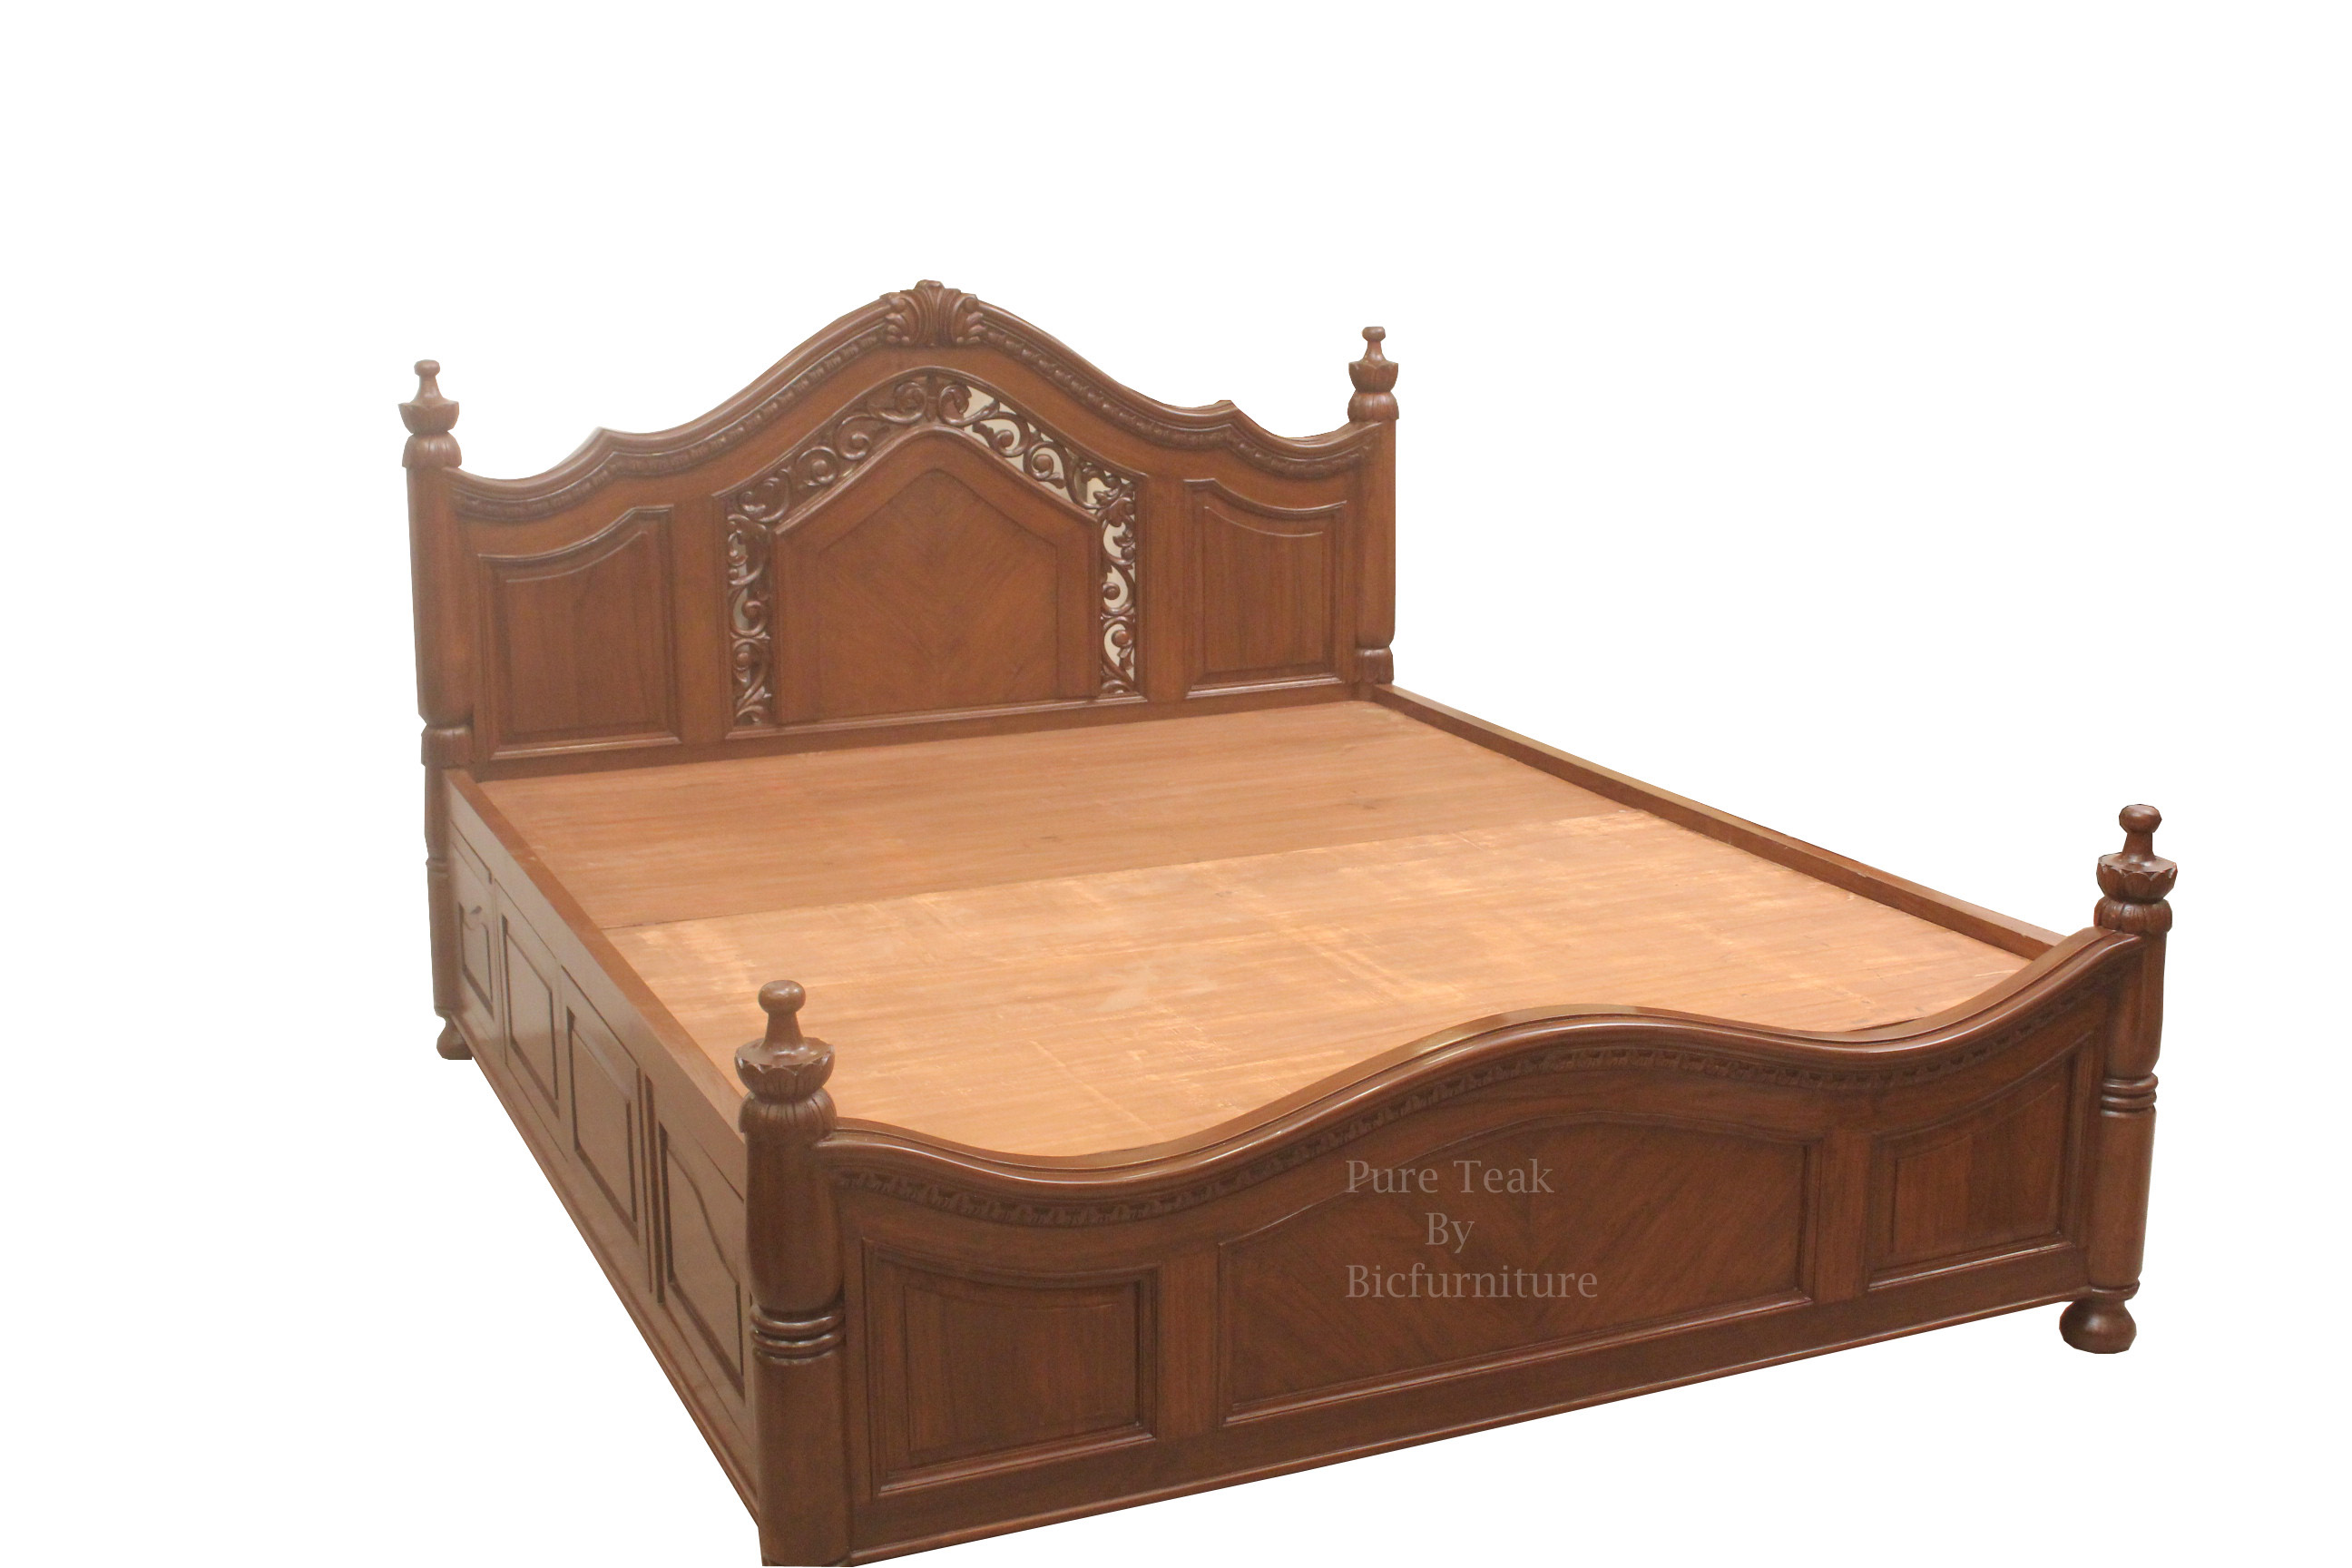 Teakwood Carving Bed BED 20 Details   BIC Furniture India